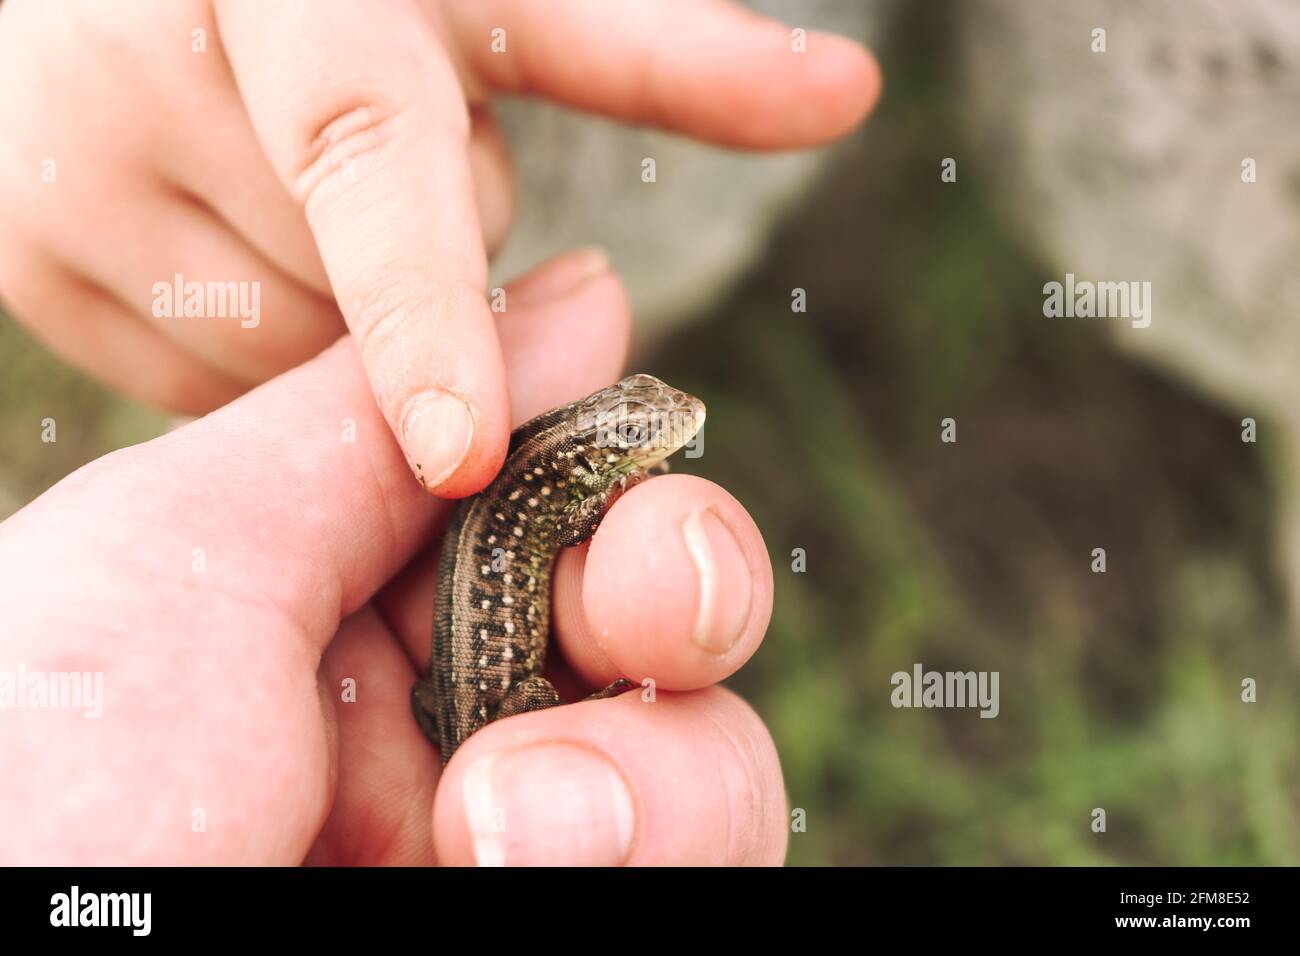 Piccola lucertola in mano. Umana e natura. Il bambino tocca la lucertola con il dito Foto Stock